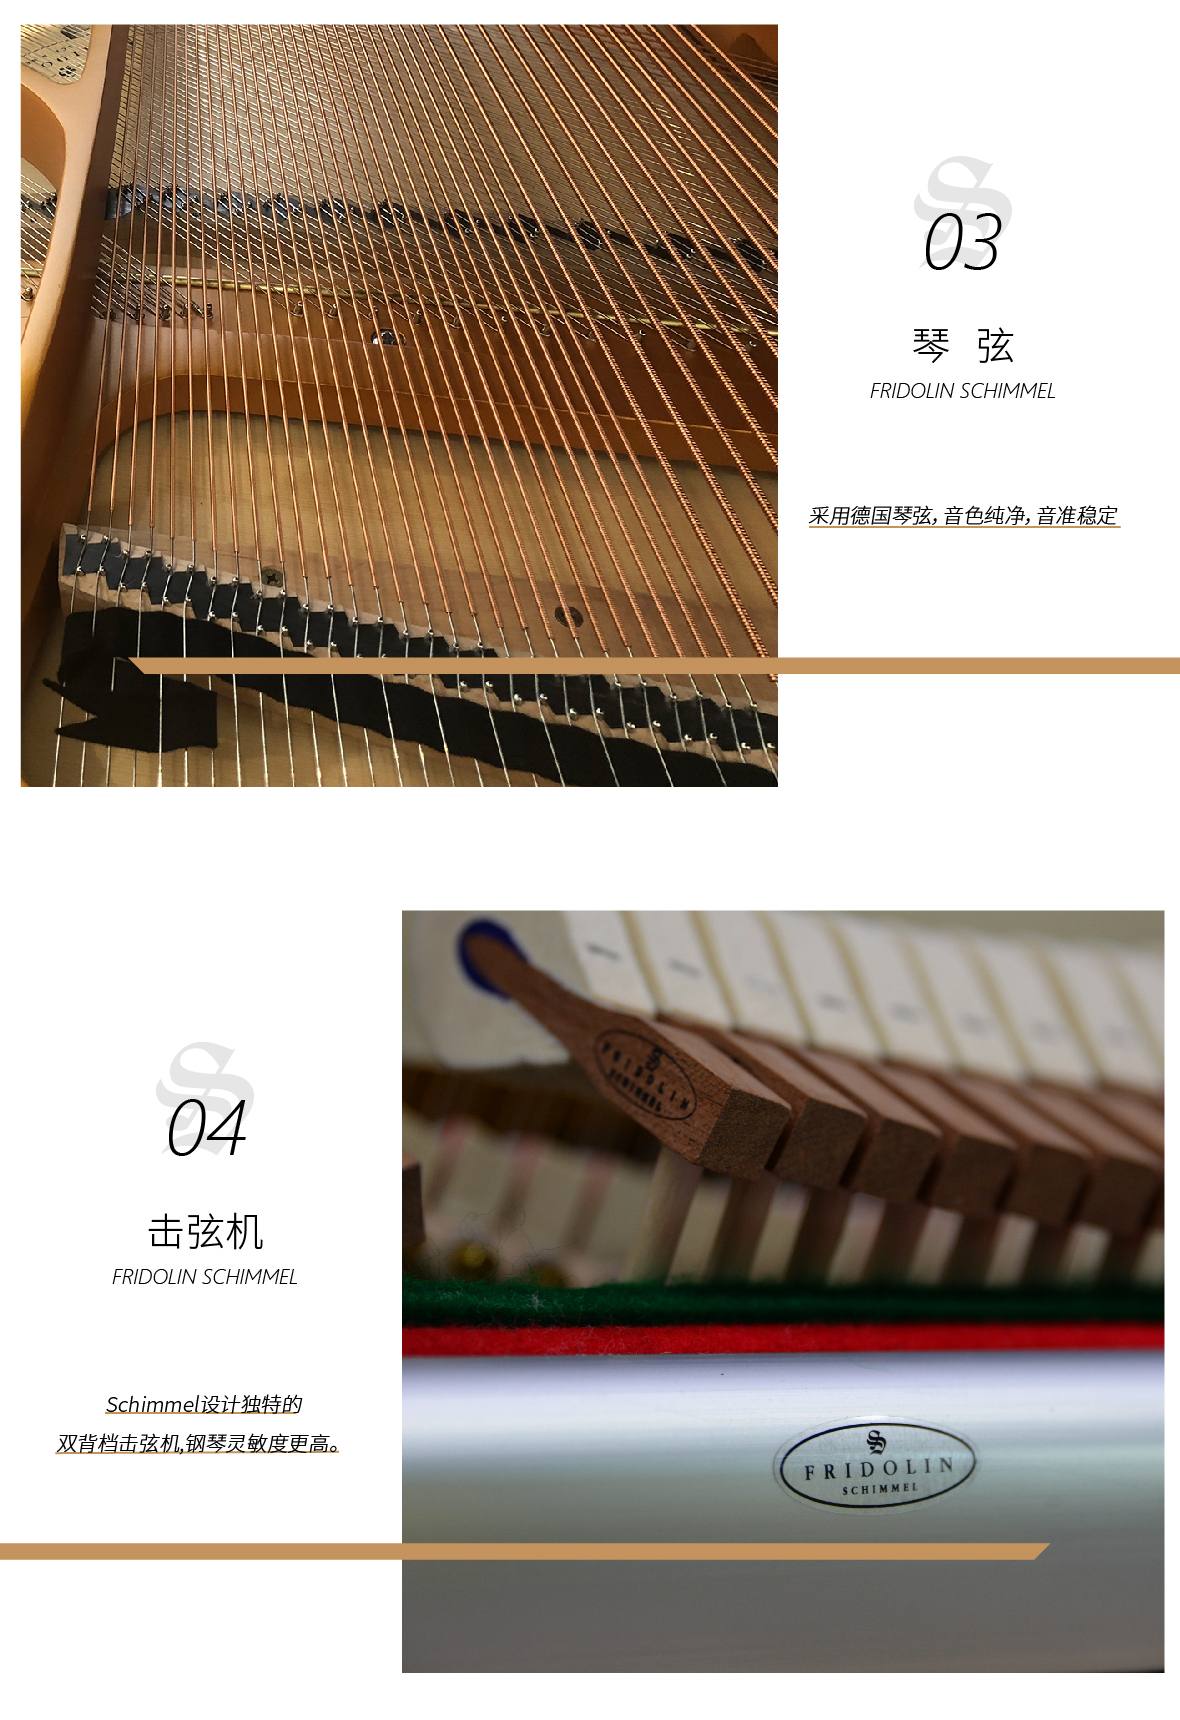 舒密尔Fridolin 钢琴F156T 图片